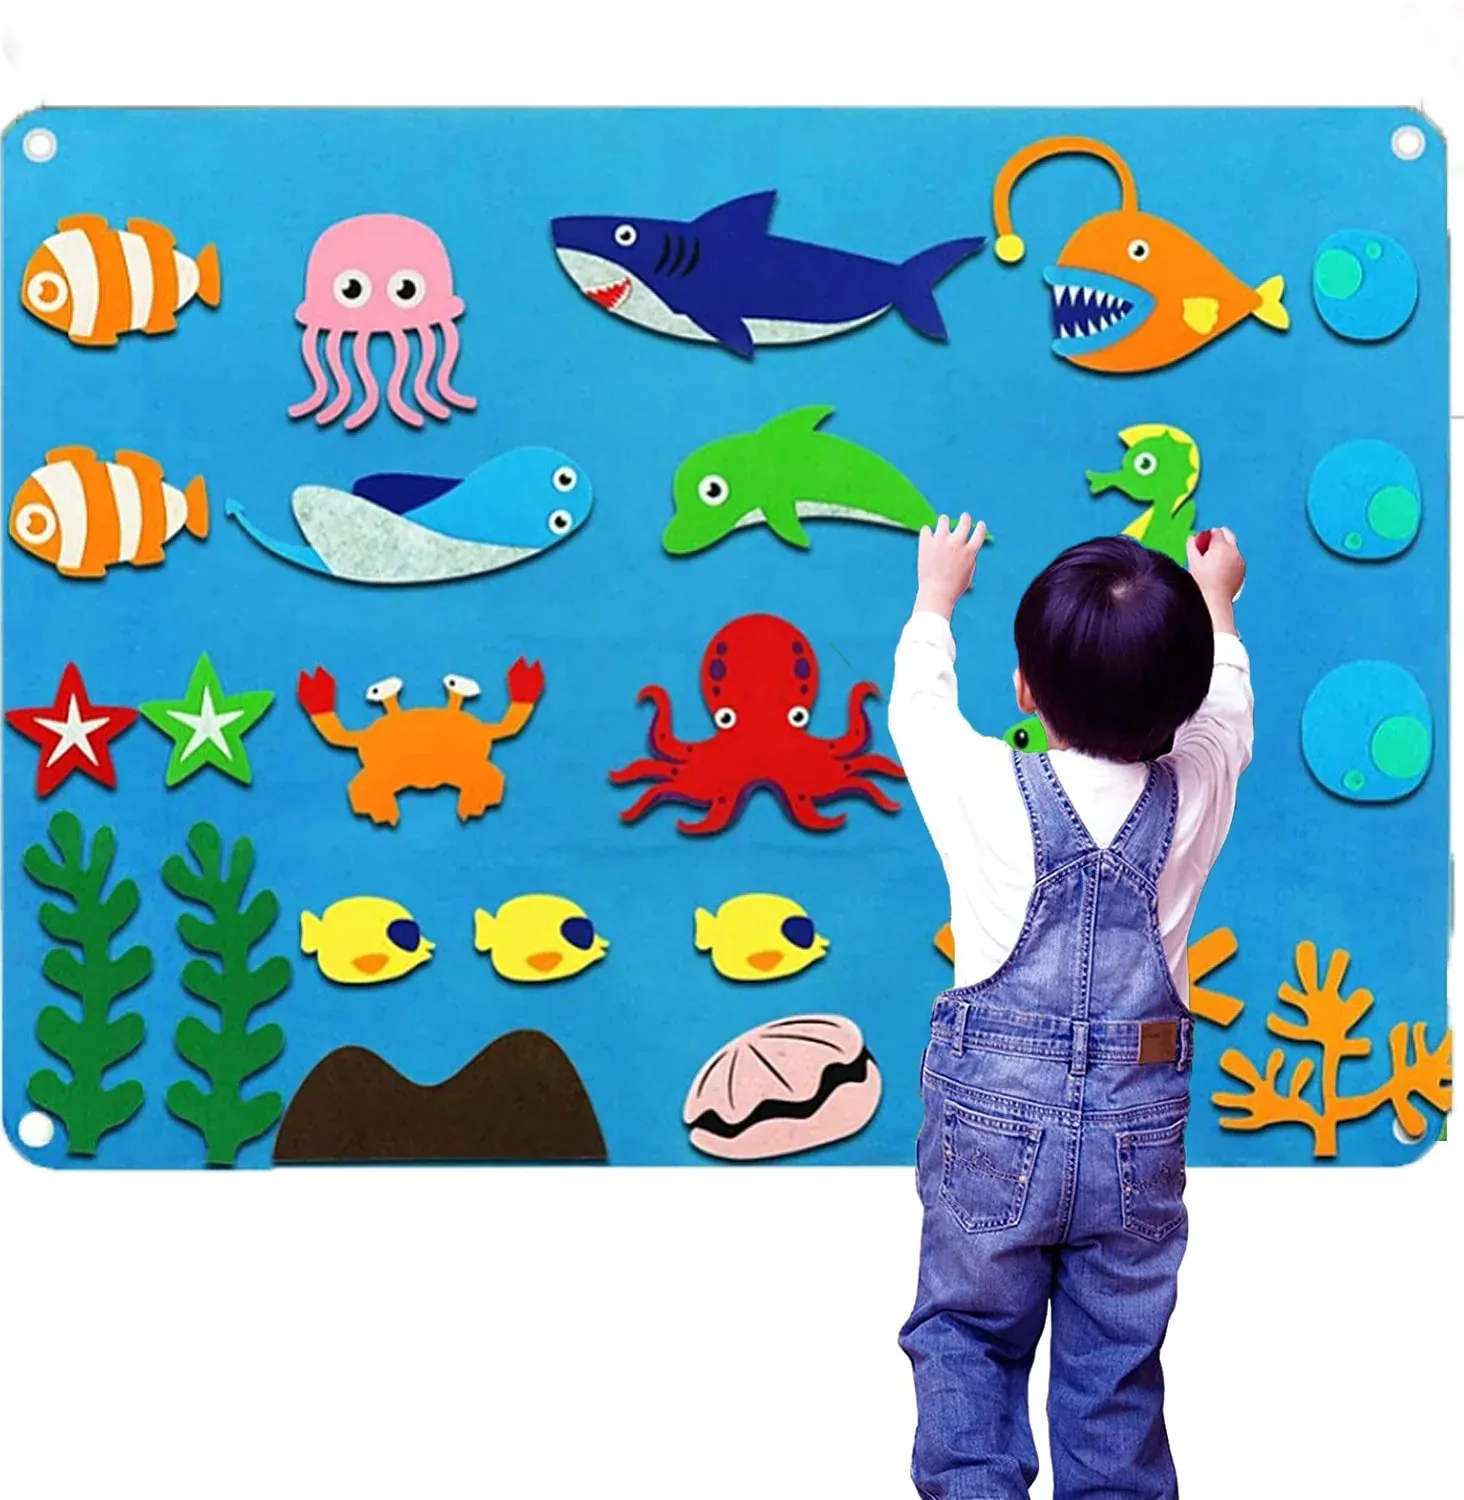 Kinder Hai Octopus Spielzeug Wand Aktivität Storytelling Teaching Ocean DIY Große Filz Board Story Set für Kleinkinder